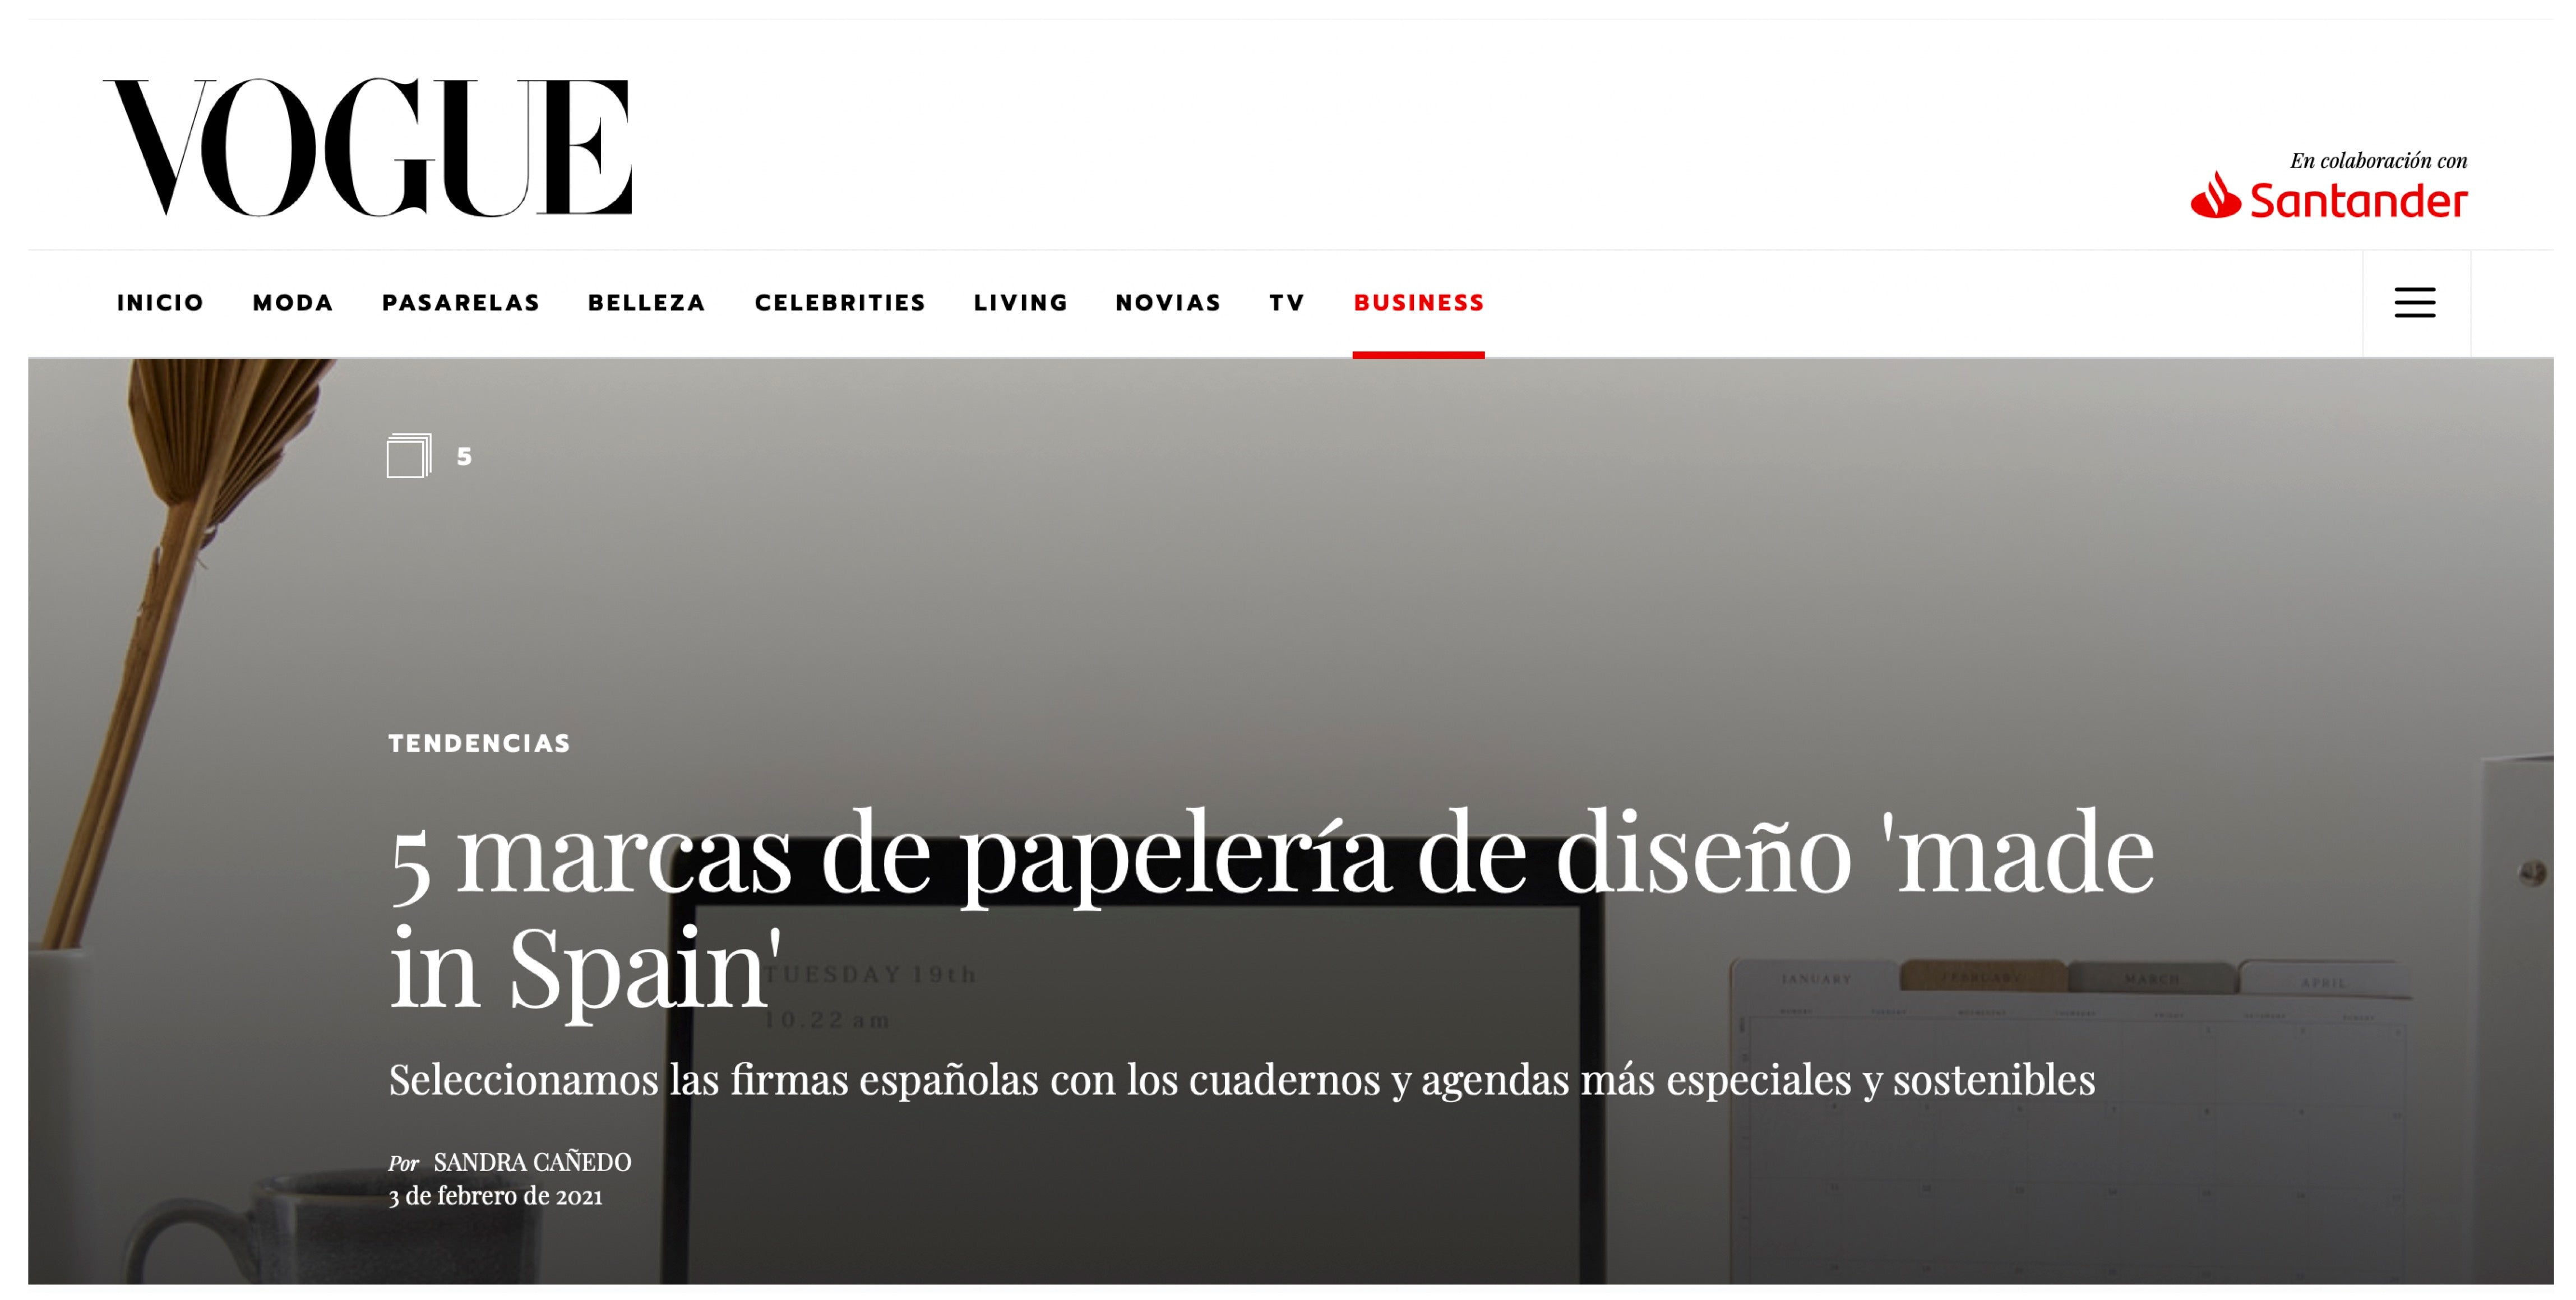 VOGUE BUSINESS: 5 marcas de papelería, Made in Spain